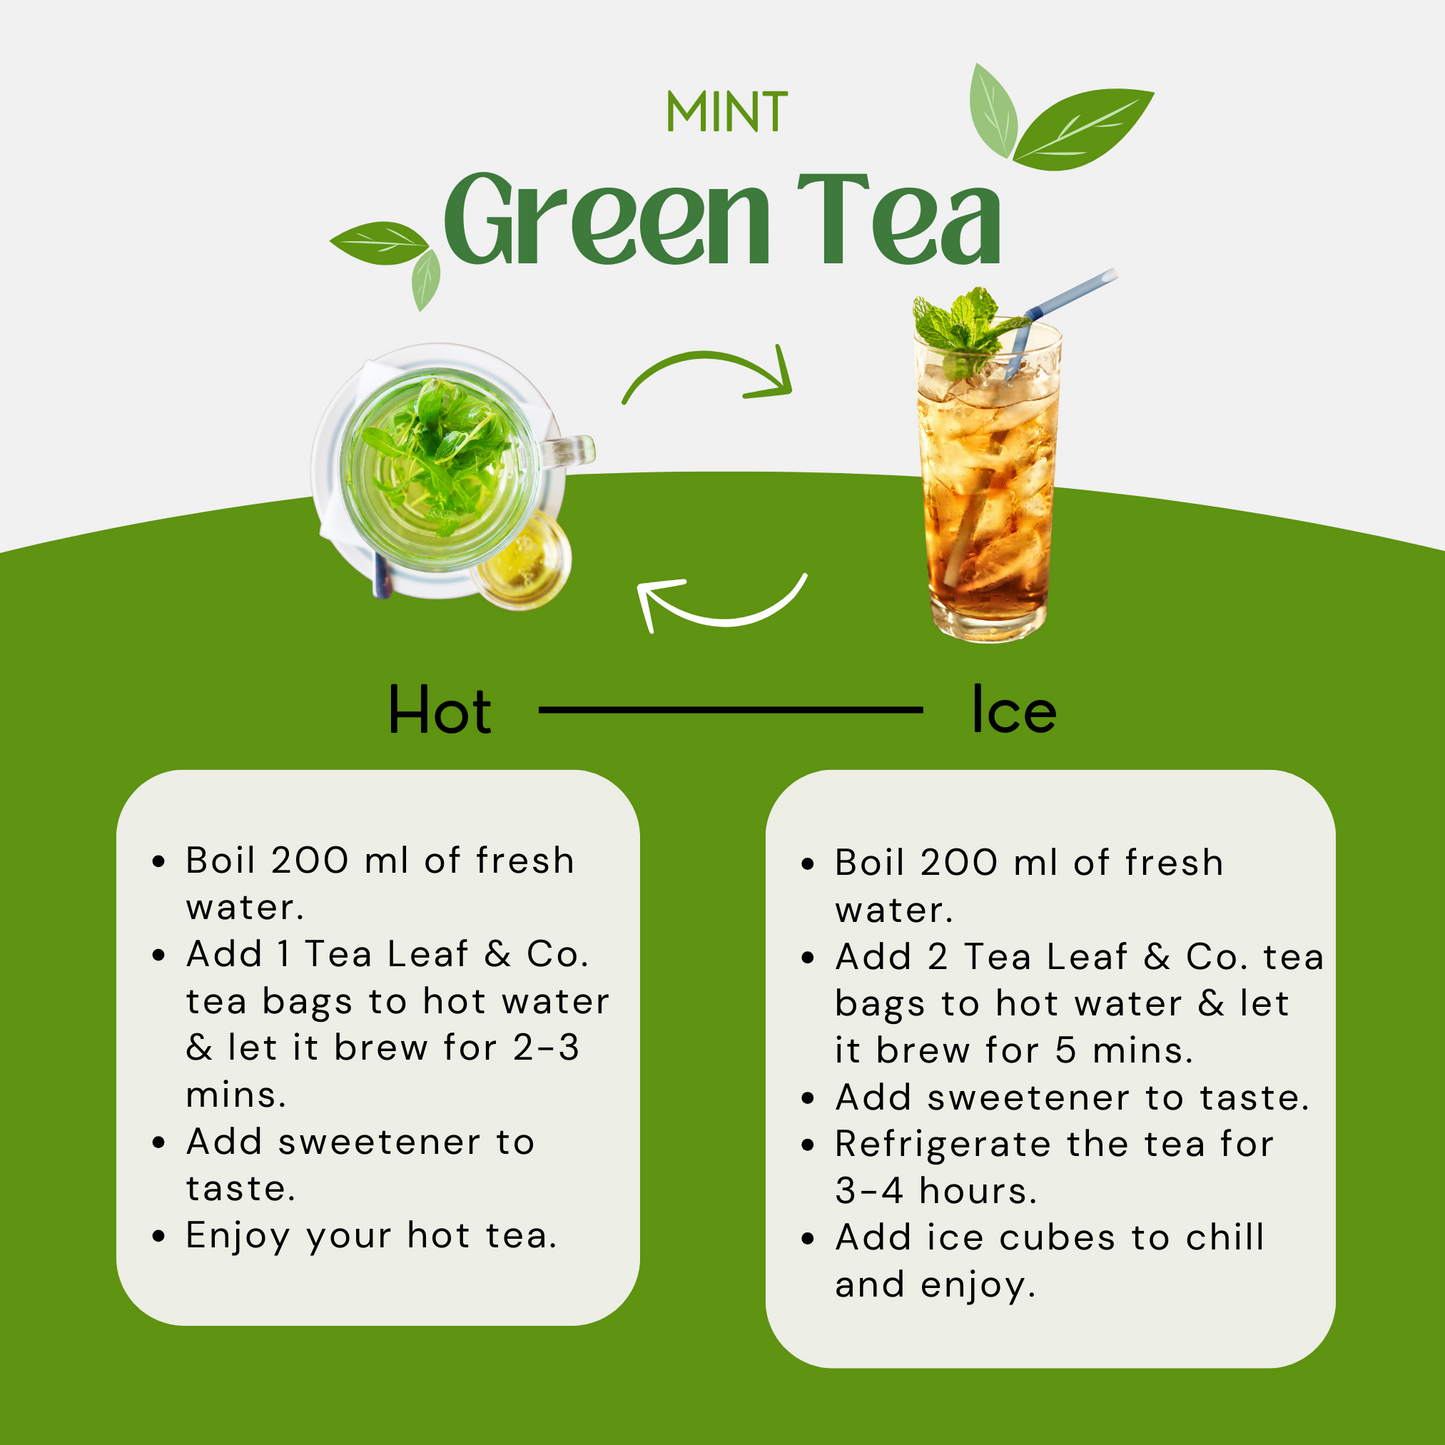 Mint Green Tea - 15 Pyramid Tea Bags